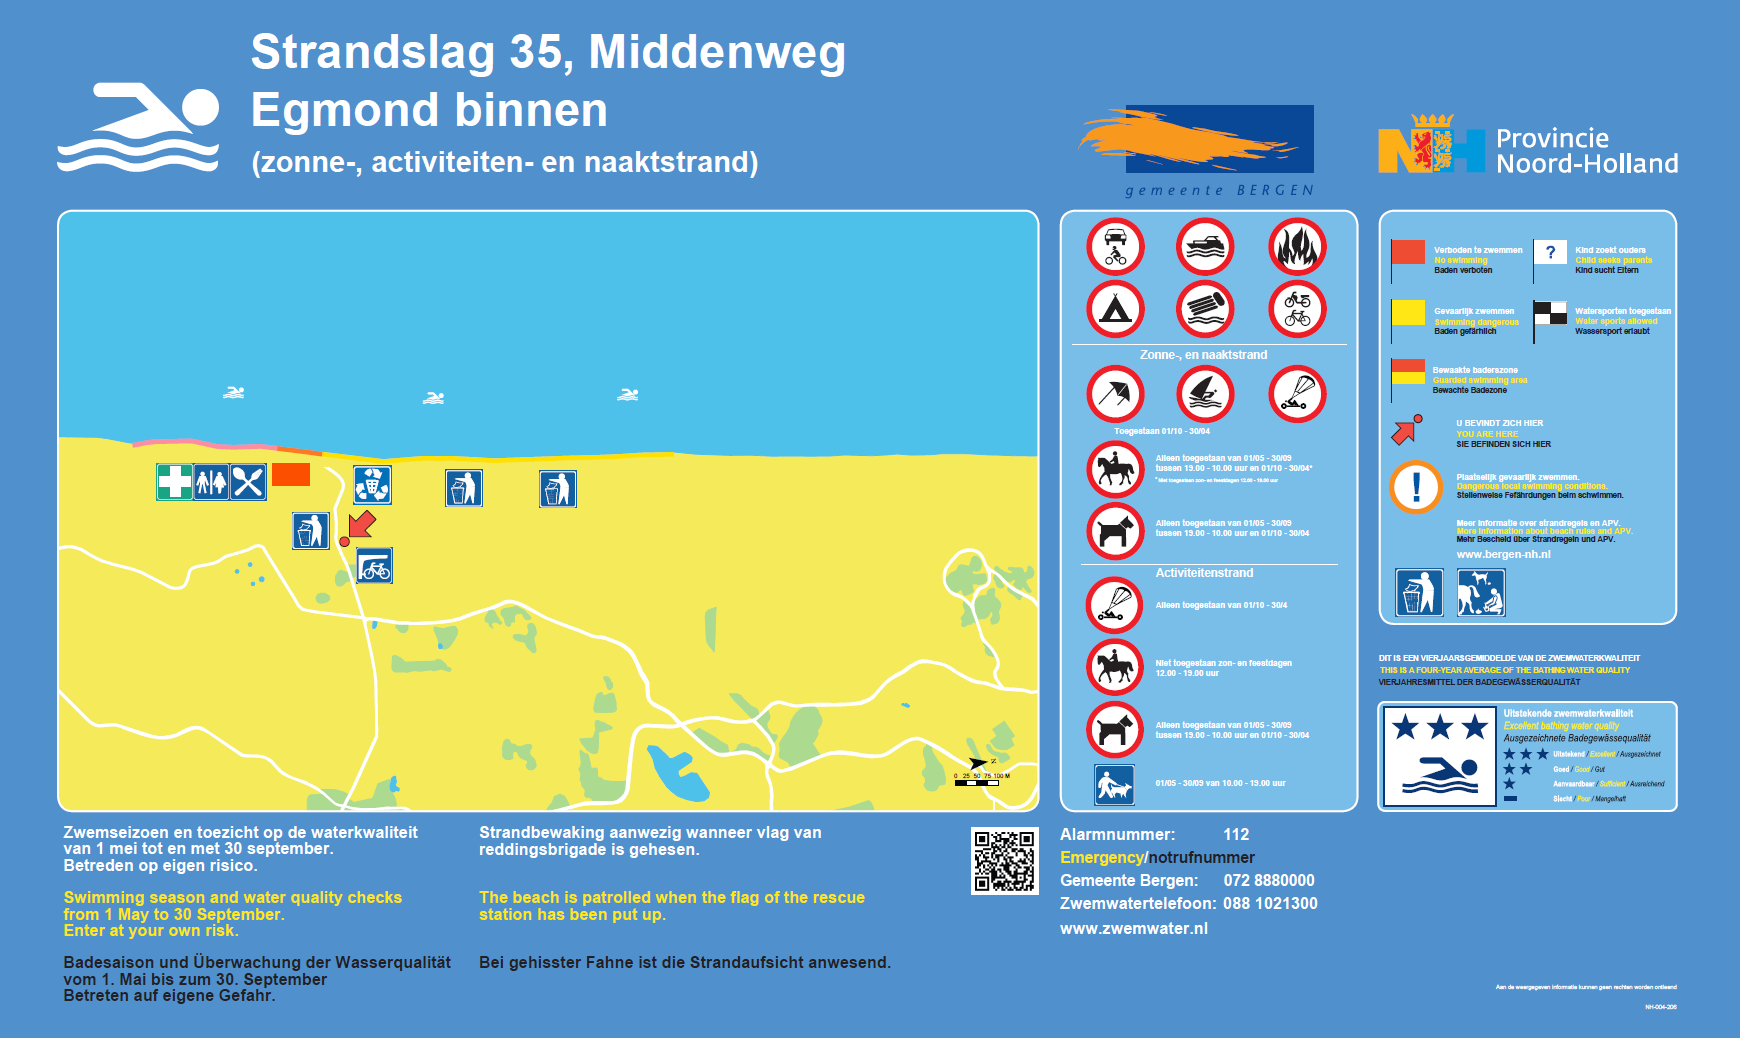 Het informatiebord bij zwemlocatie Middenweg, Egmond binnen, Strandslag 35